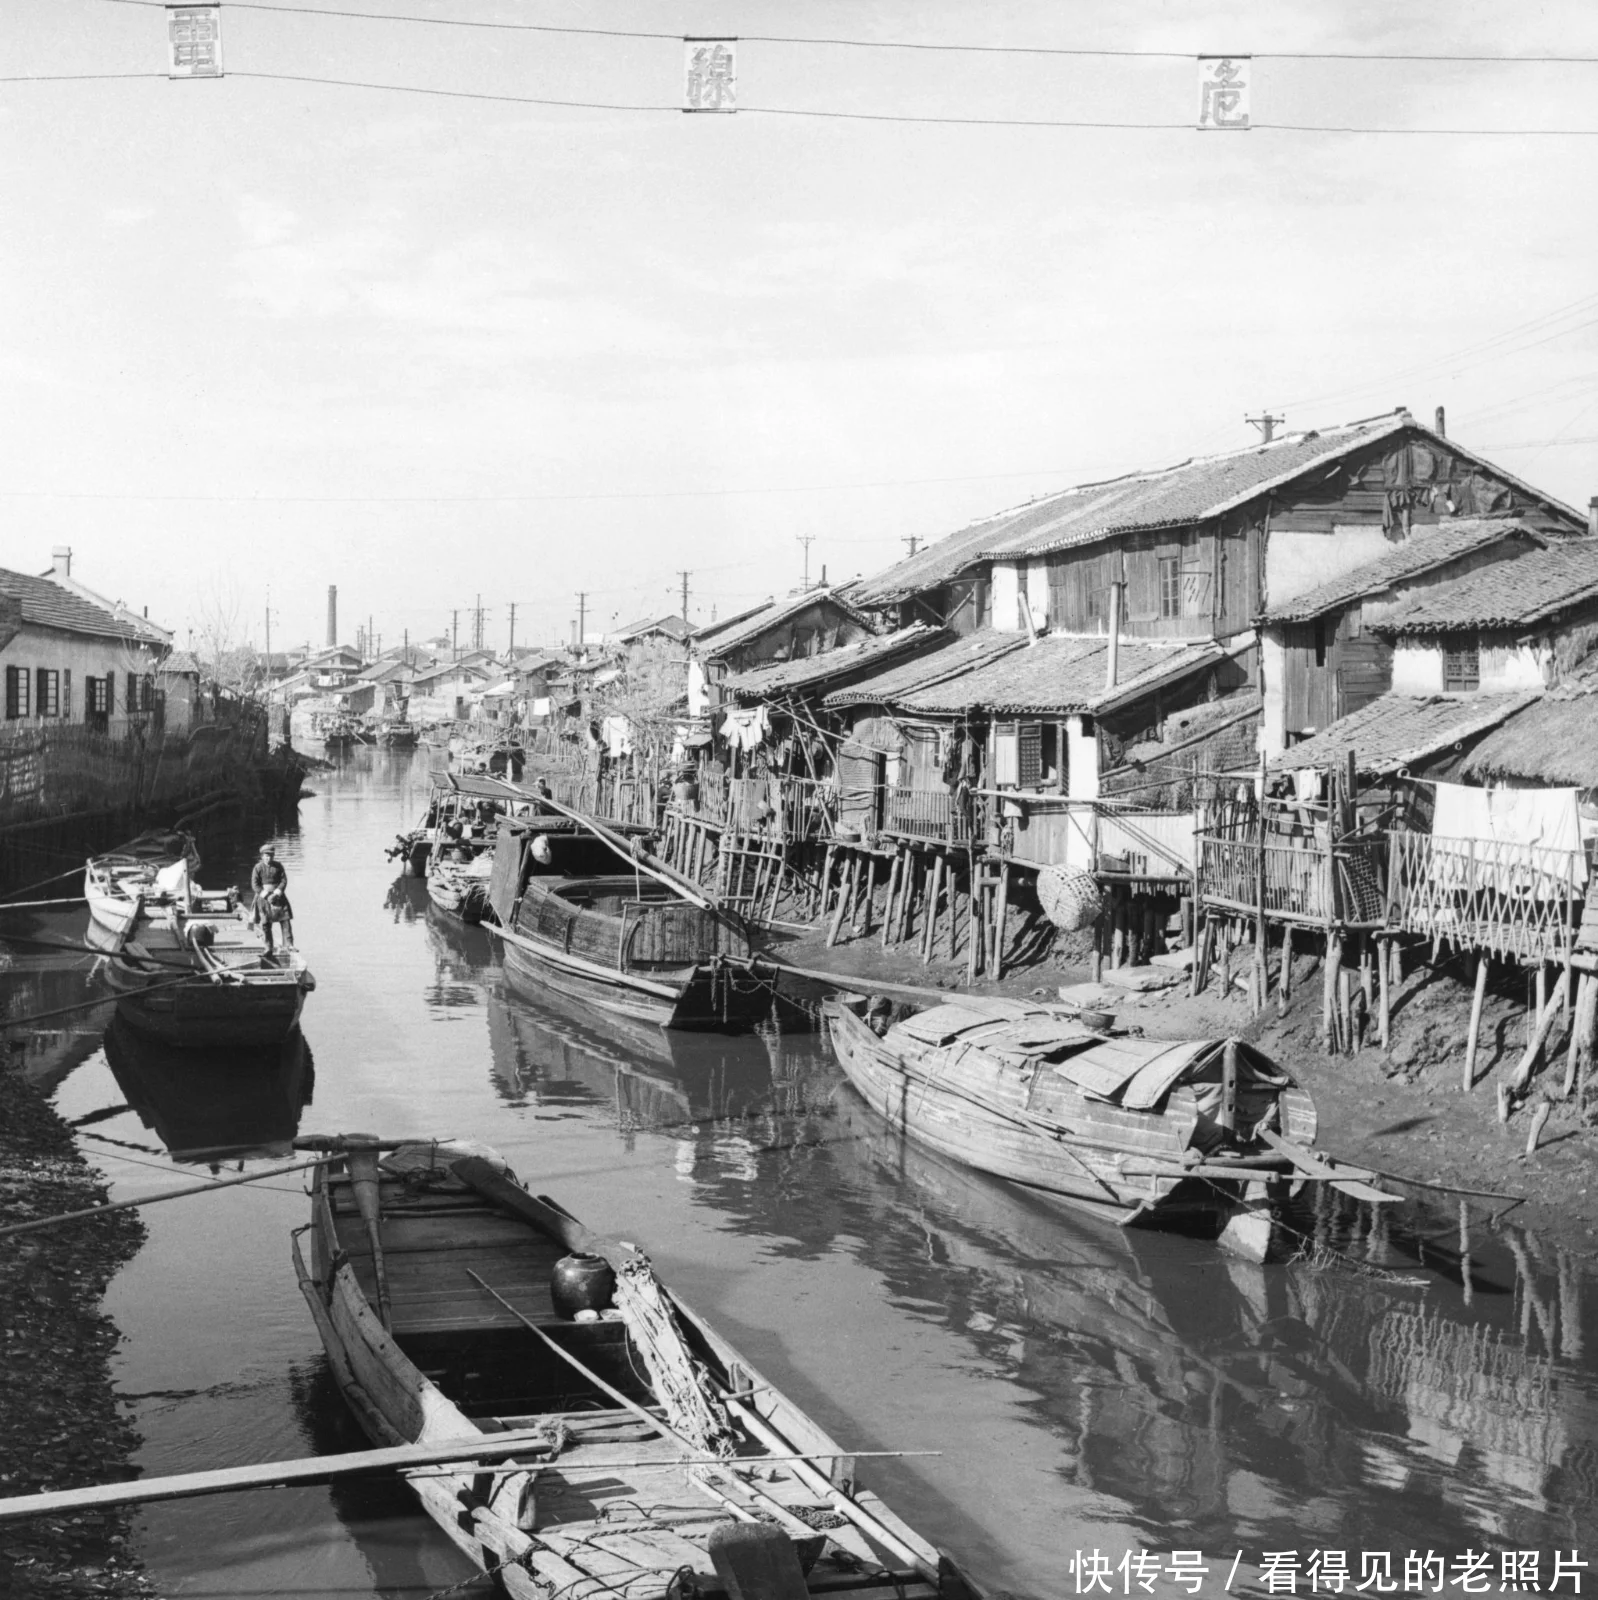 无锡古运河是京杭大运河的一段，它北接长江，南达太湖，全长四十多公里，纵贯无锡城区。